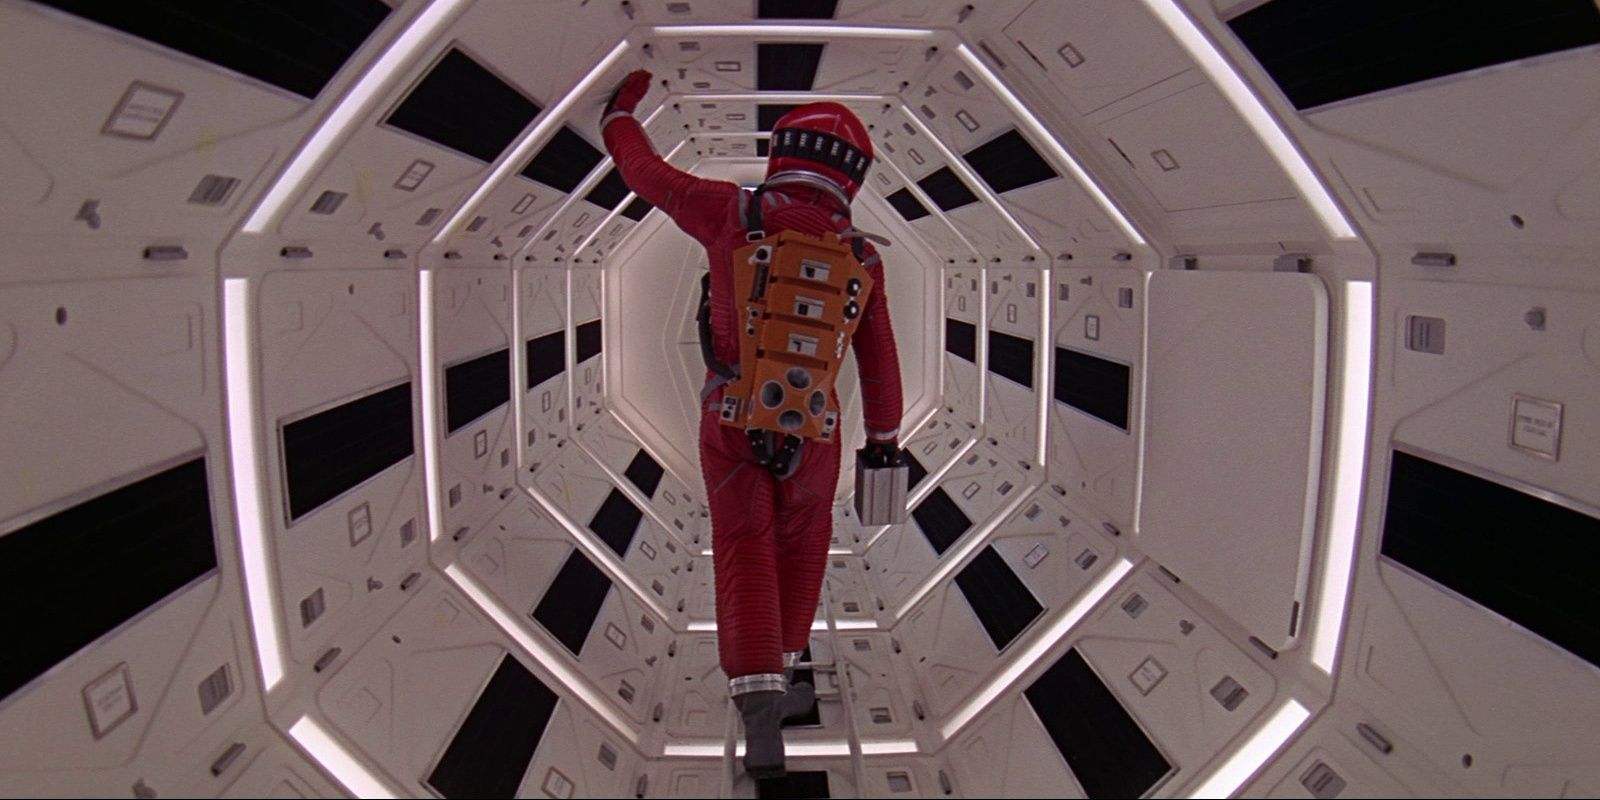 2001: A Space Odyssey Corridor